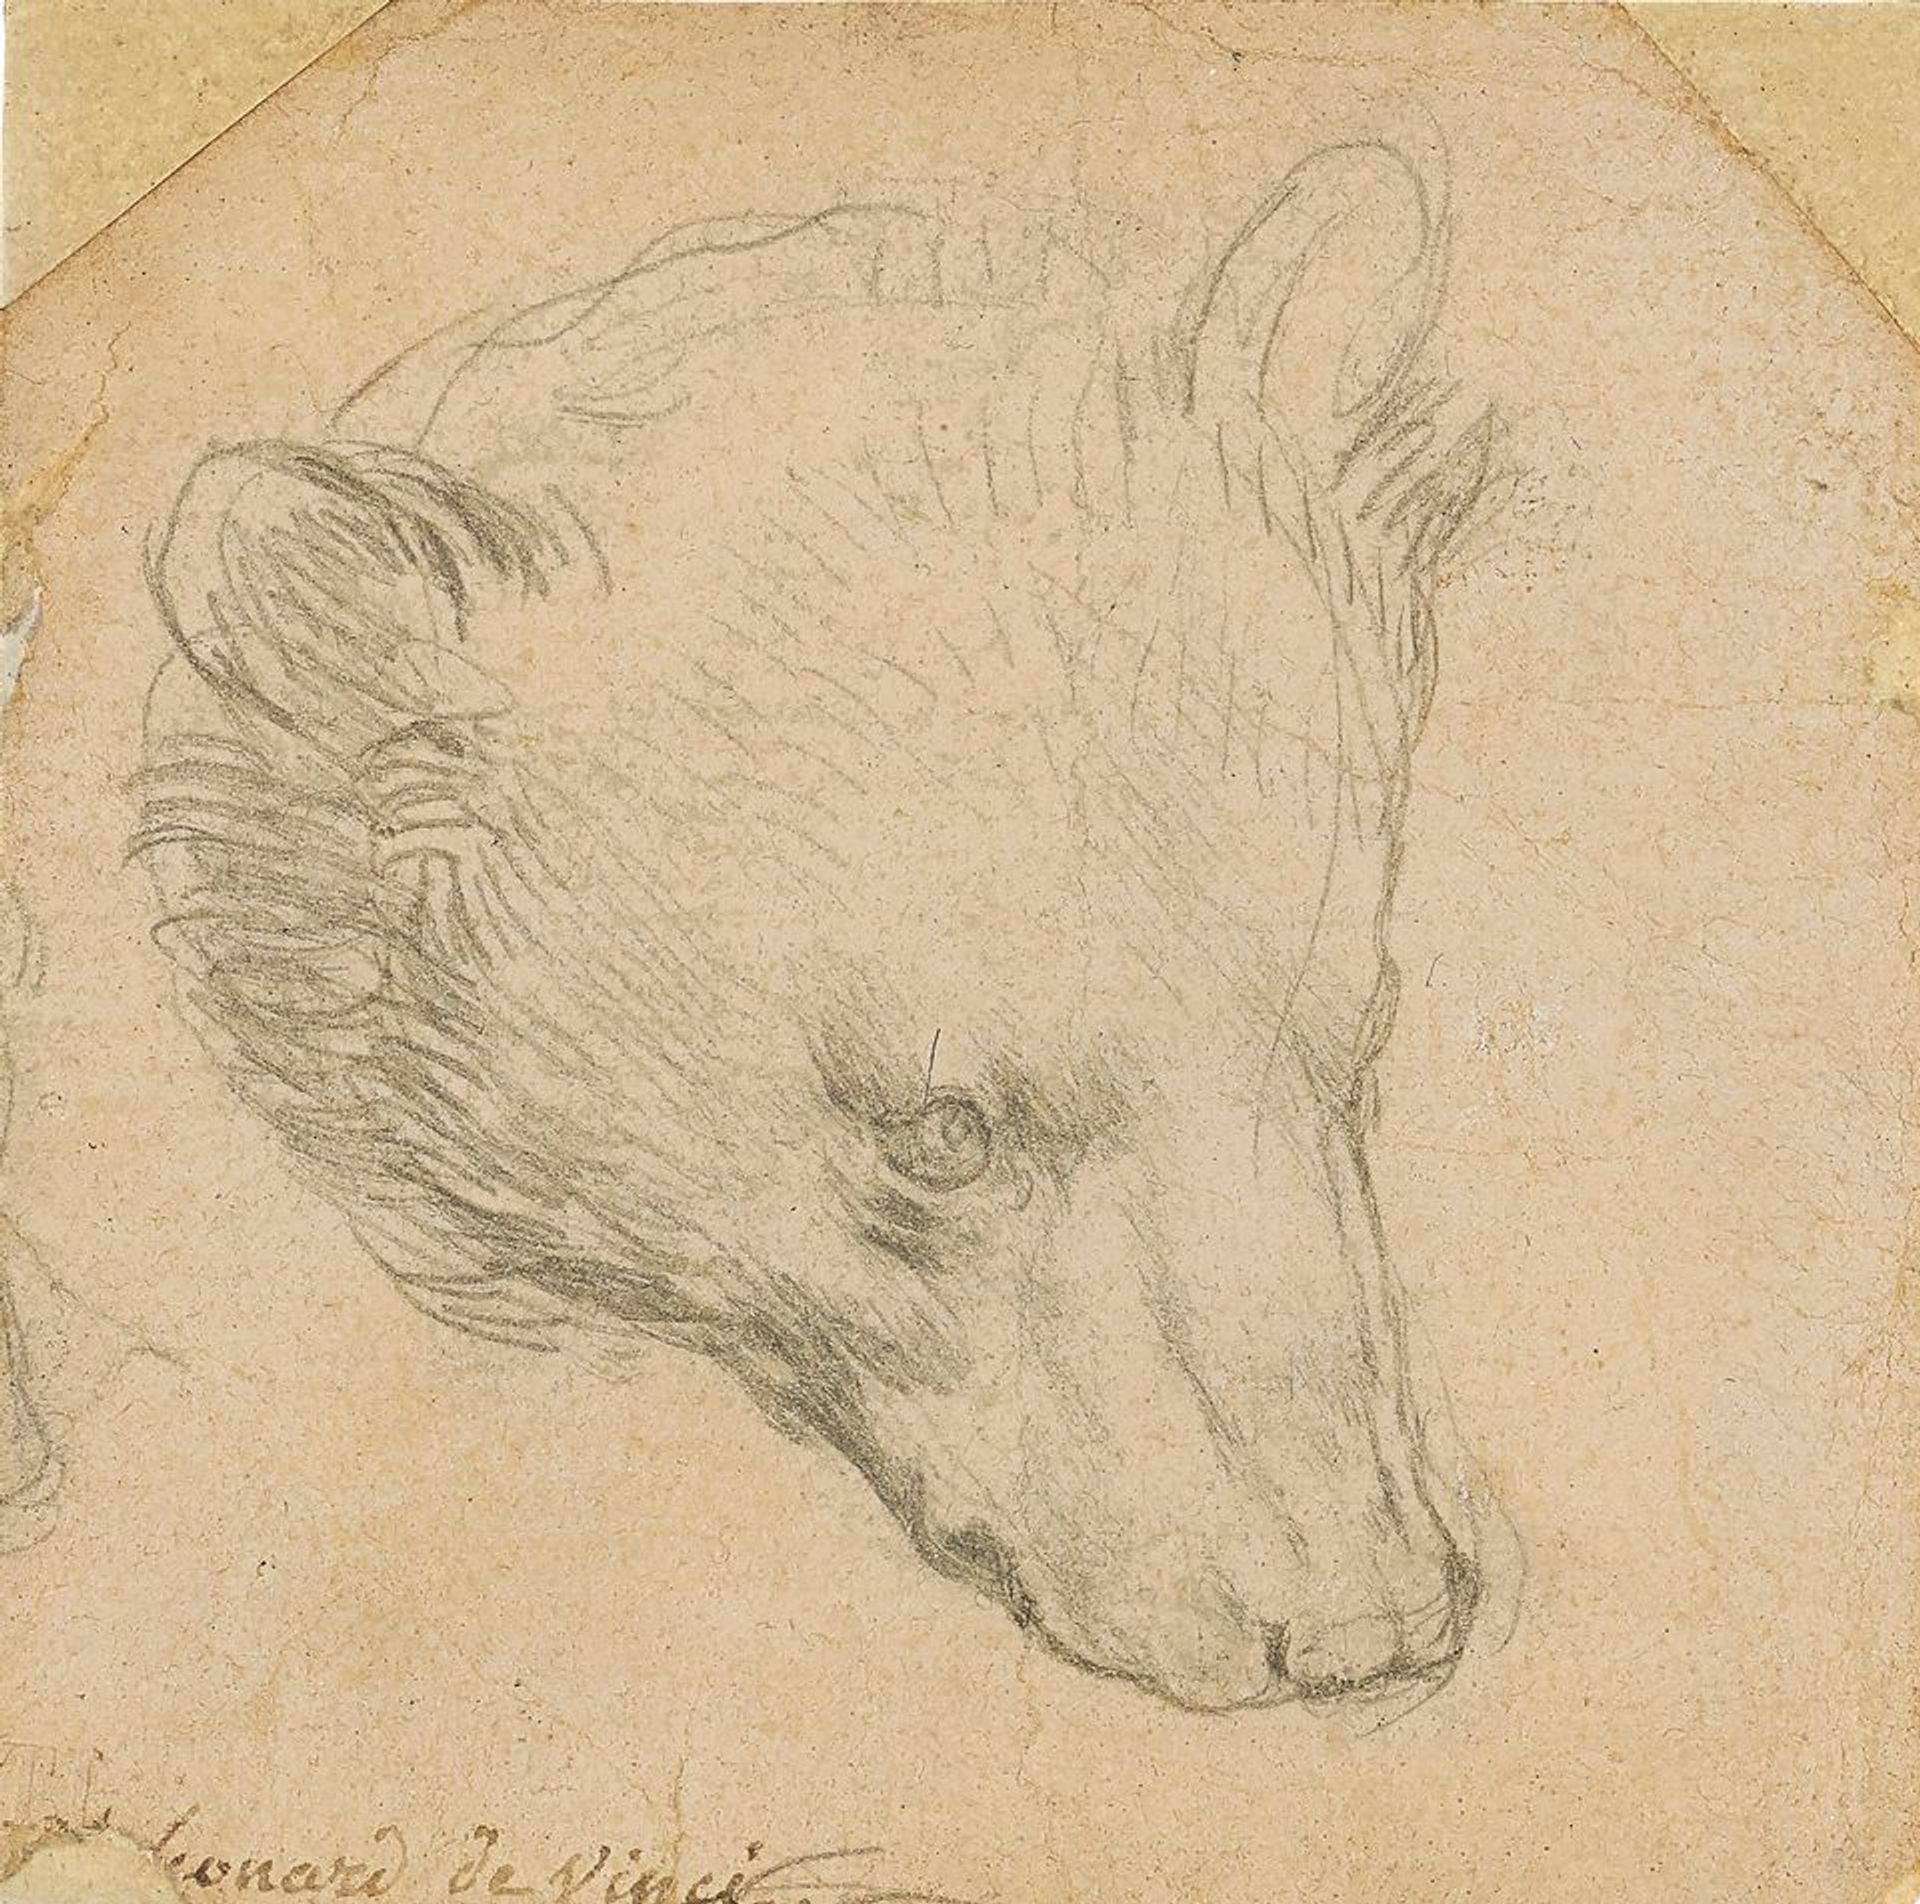 Cette Tête d’ours de Léonard de Vinci pourrait atteindre 14 millions d’euros. © Christie’s